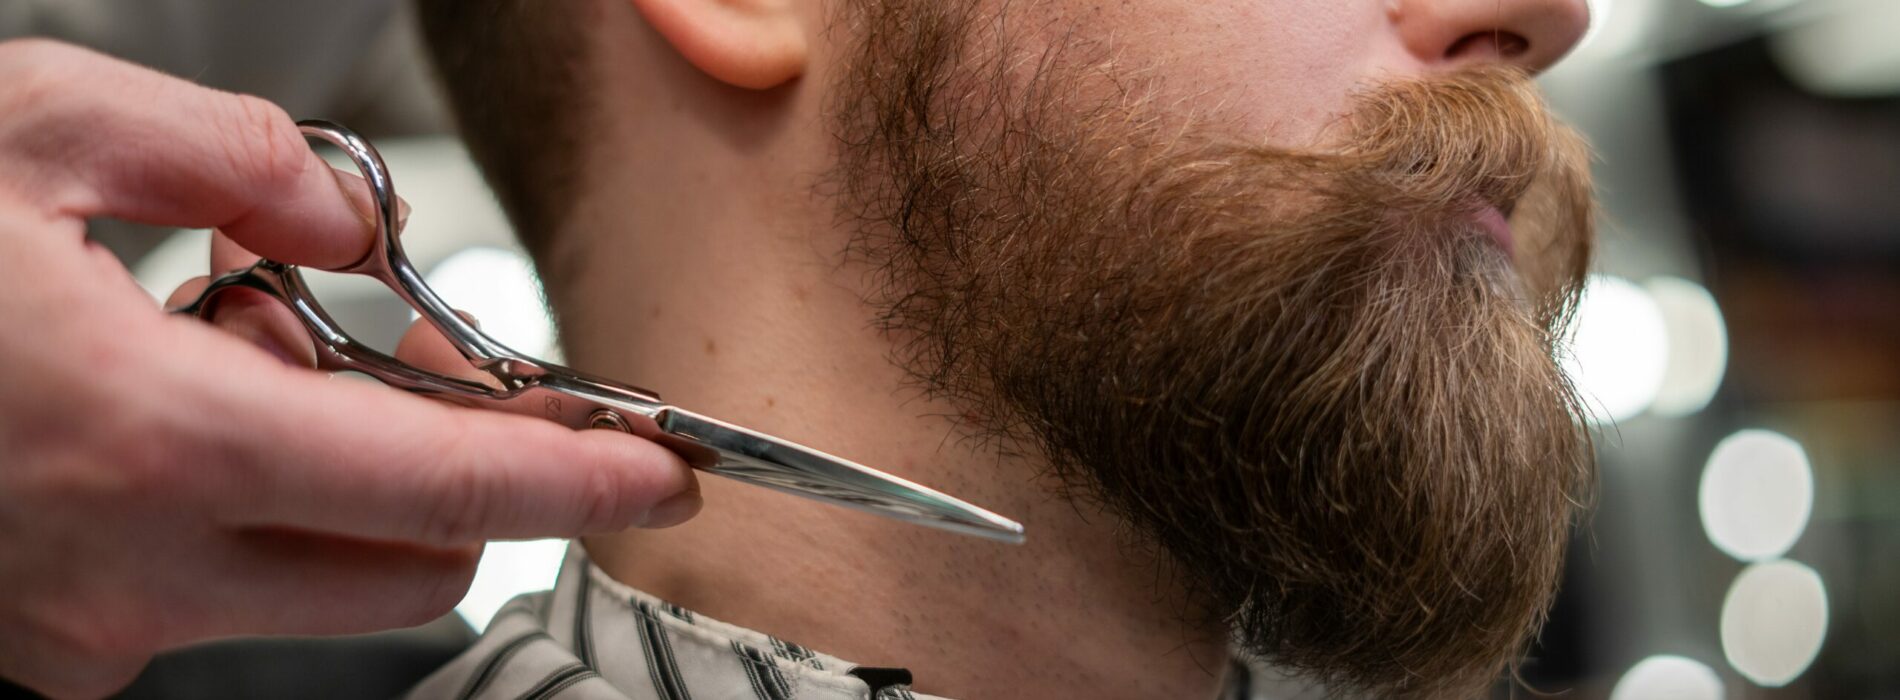 Porady jak zapuścić brodę oraz o nią dbać